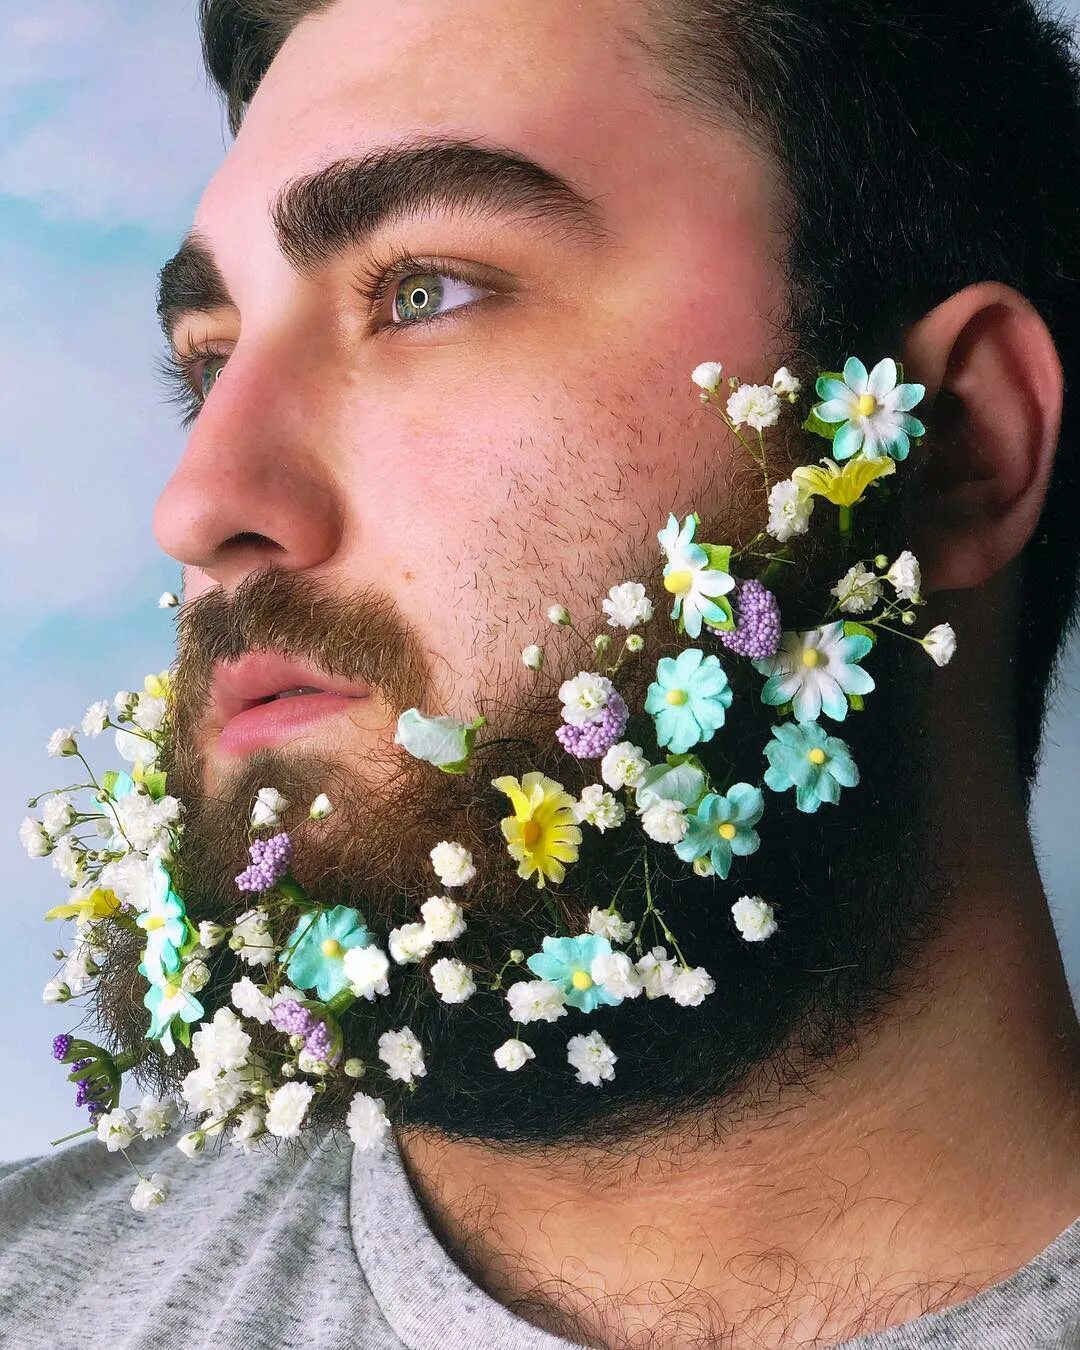 Борода с цветами. Мужчина с цветами. Борода с цветочками. Украшения для бороды. Борода украшает